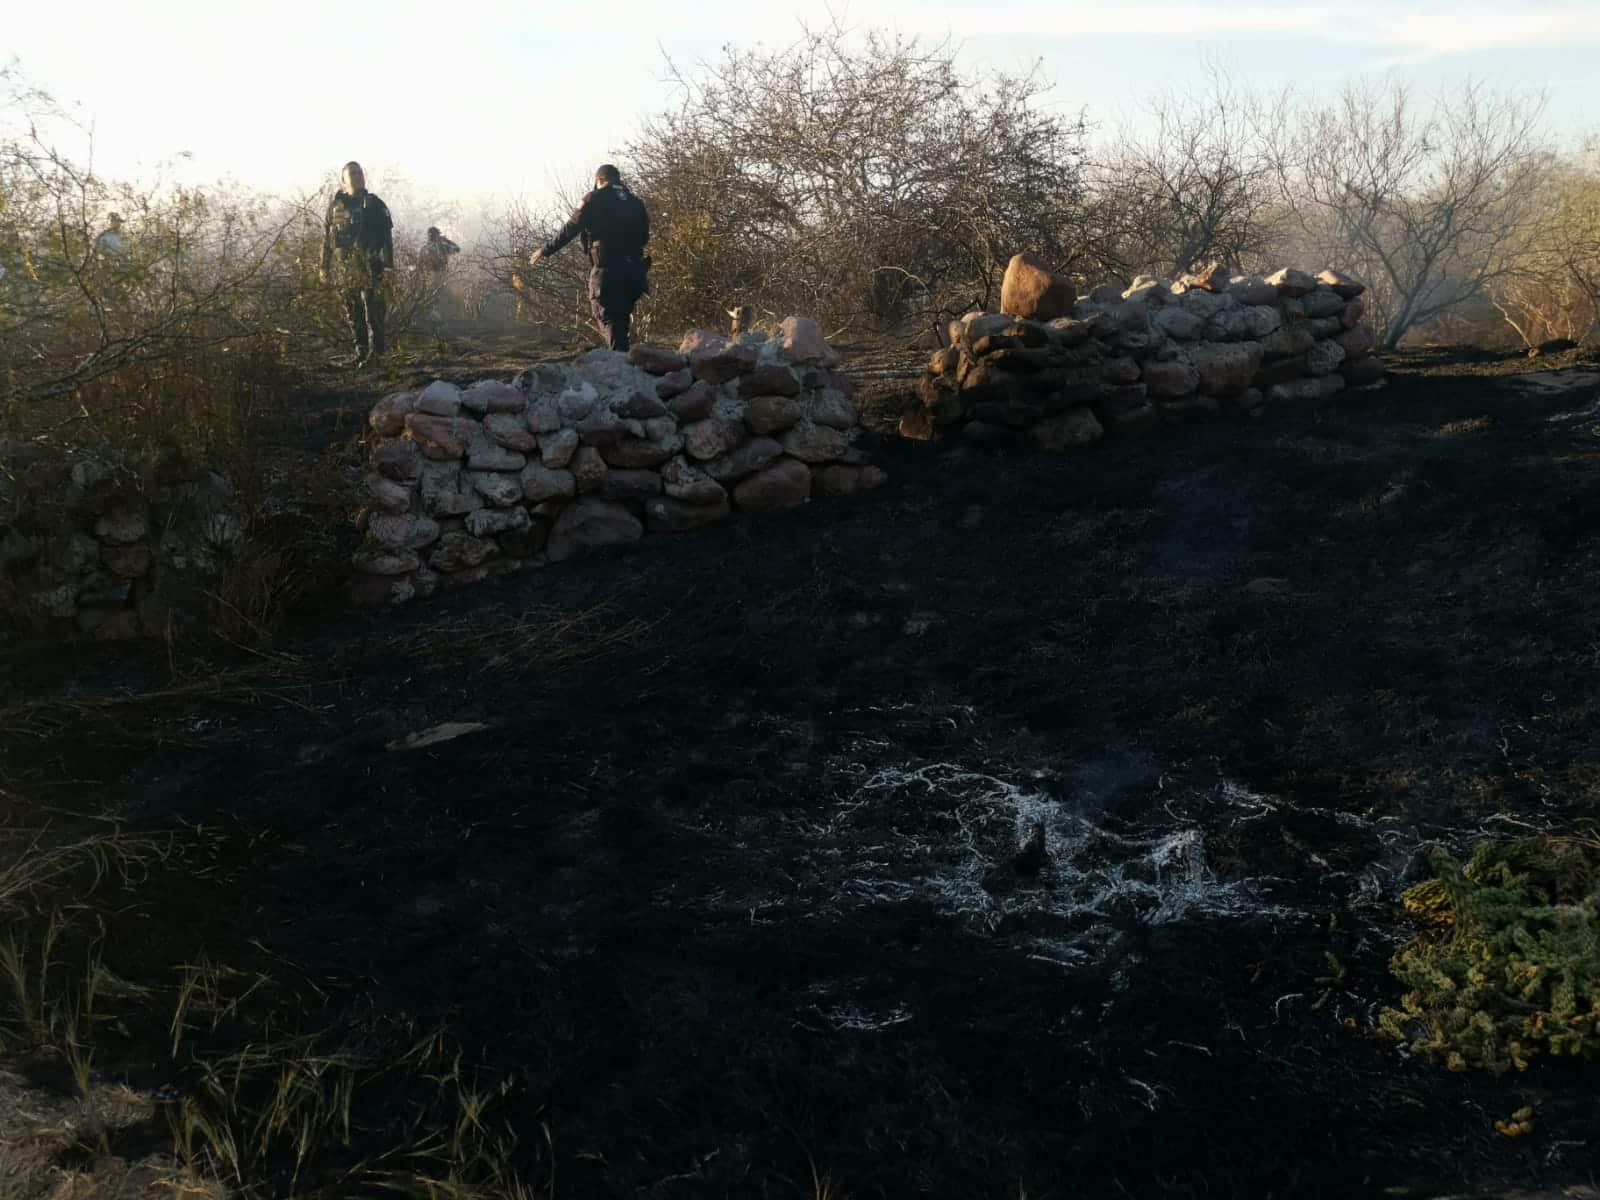 Botella provoca que se quemen 5 hectáreas en área protegida de El Maviri